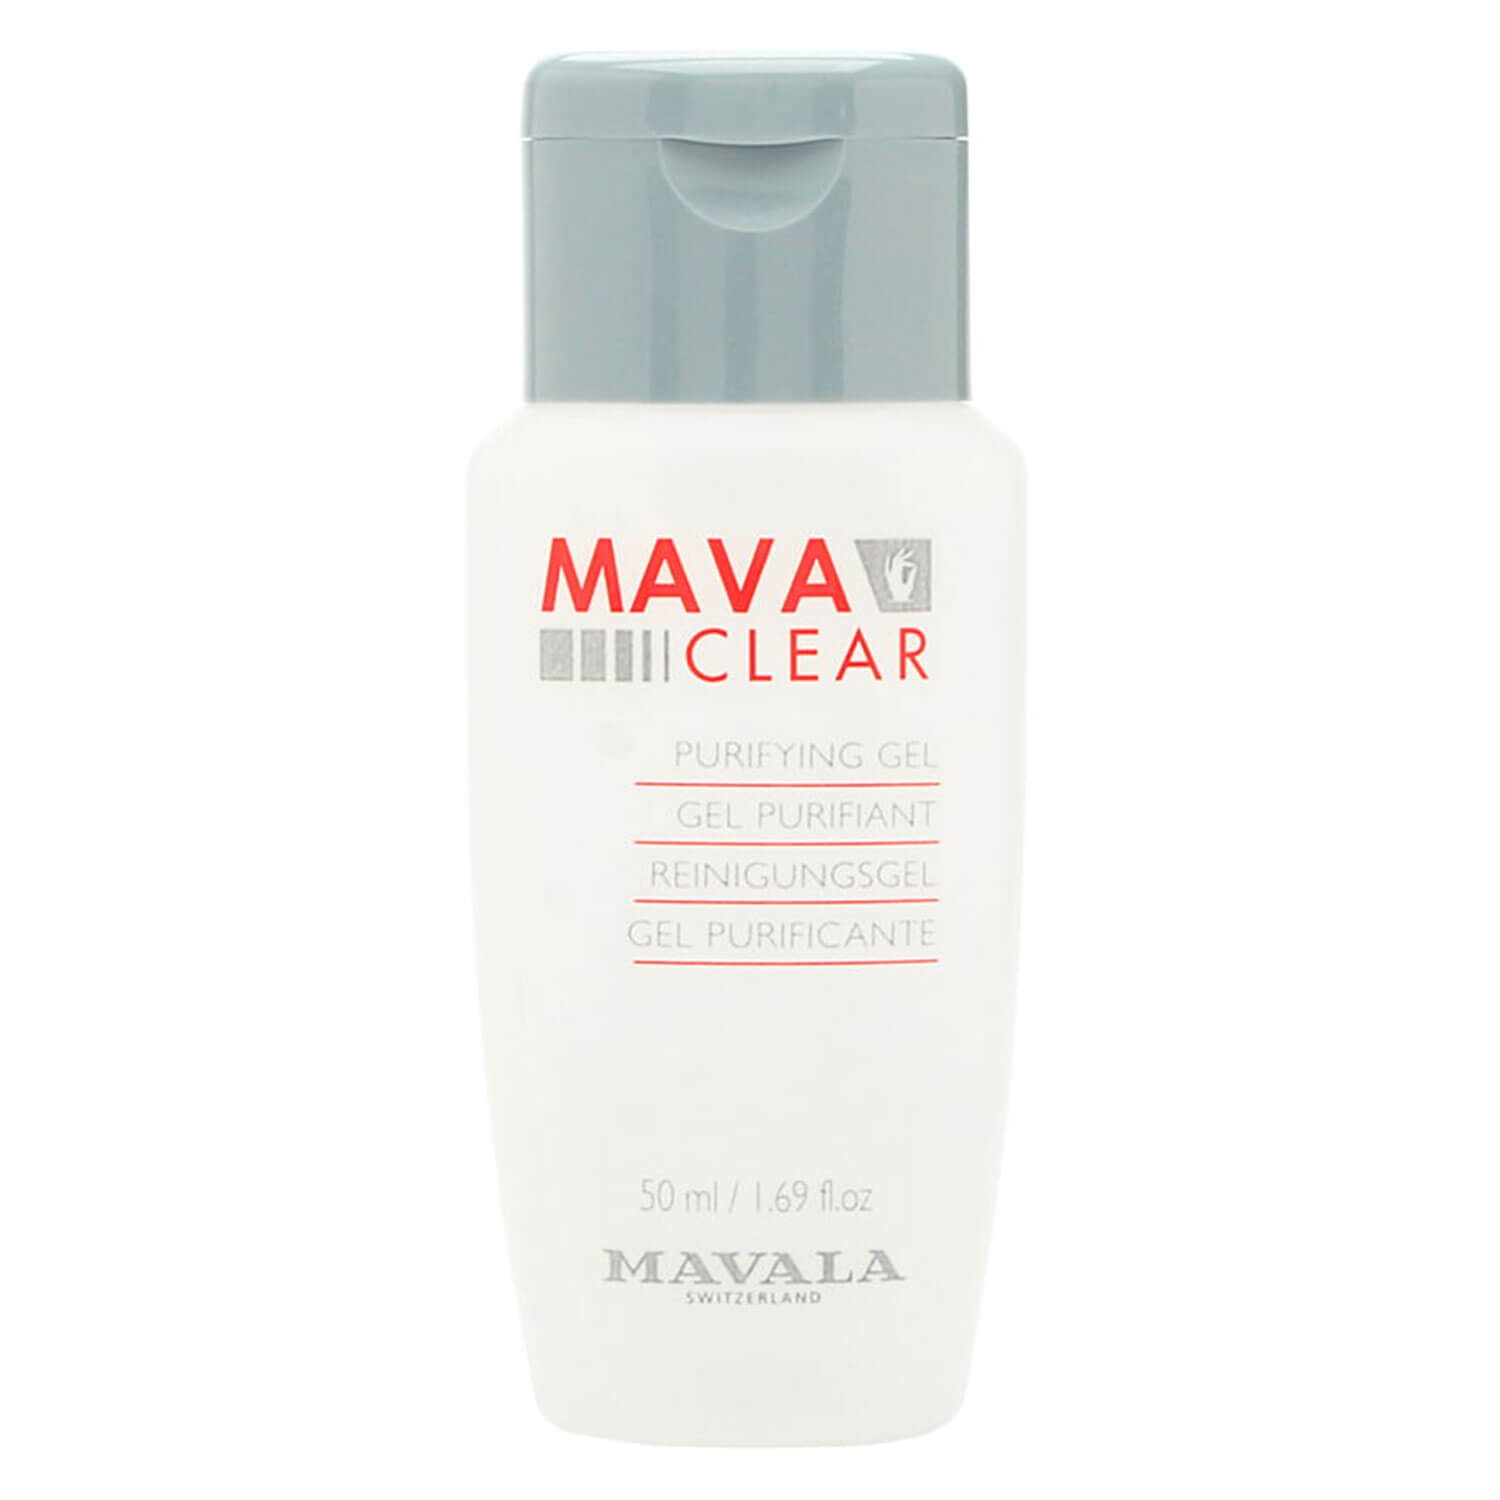 Produktbild von MAVALA Care - Mava Clear Reinigungsgel